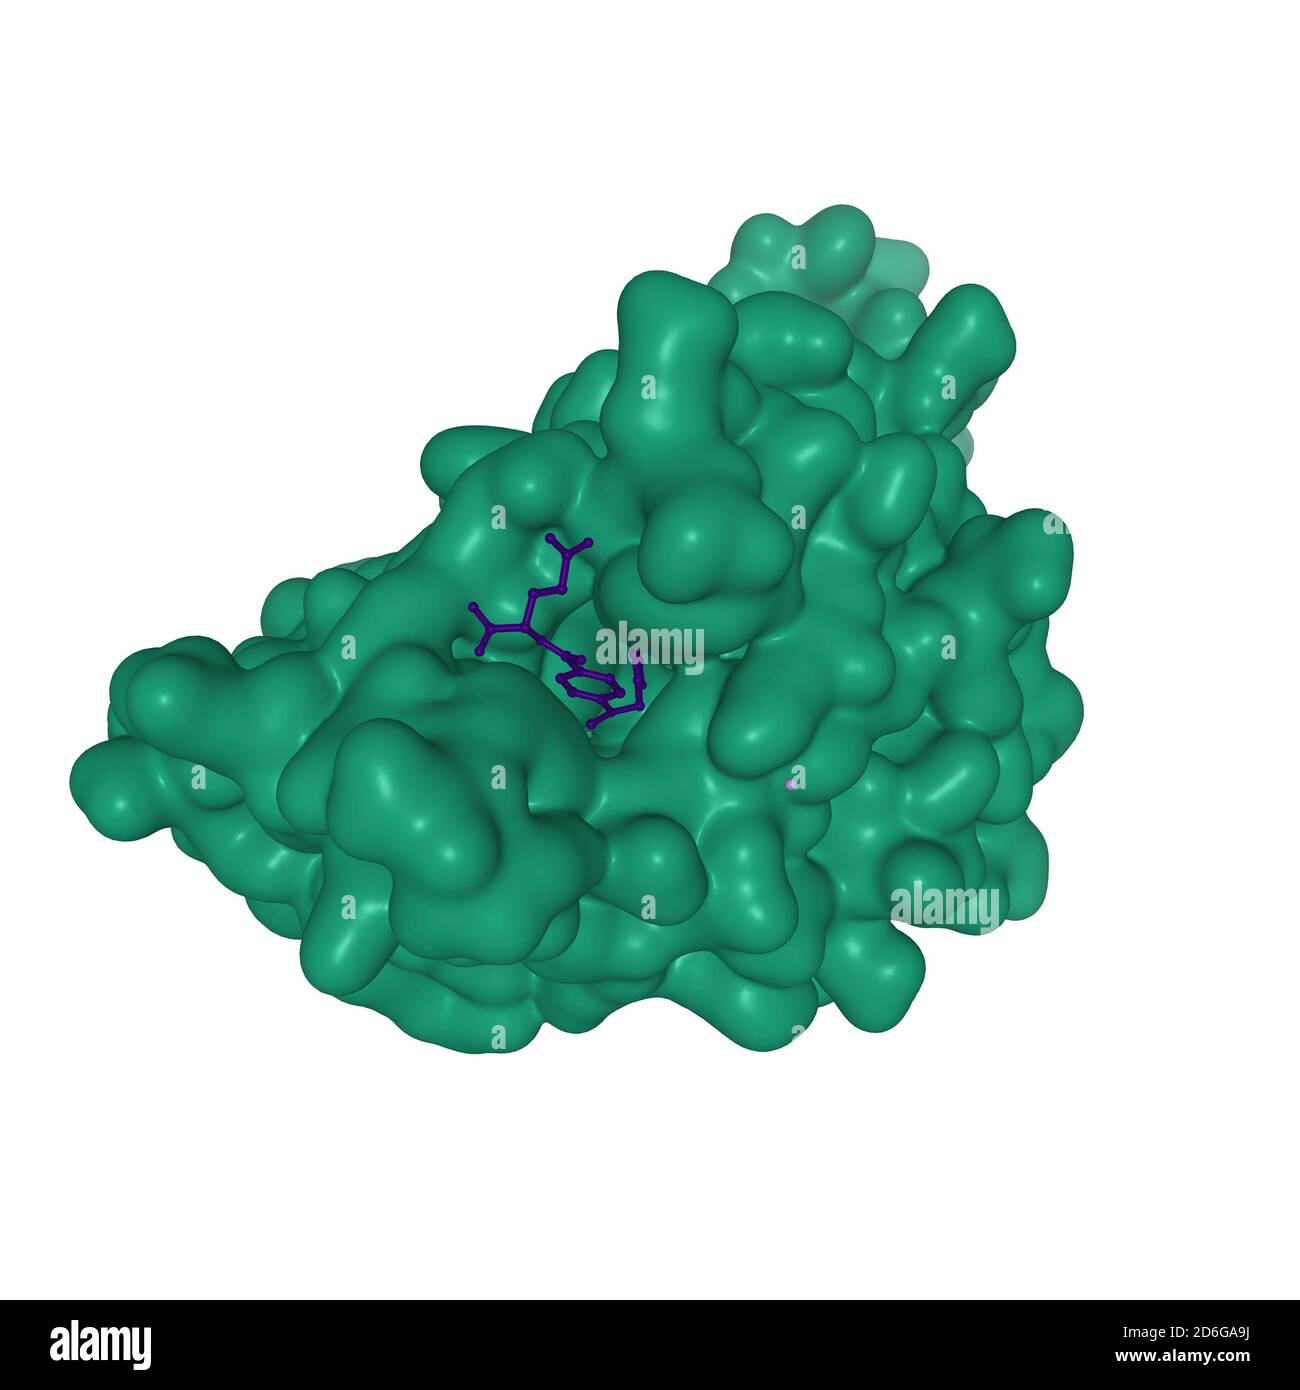 Humaner Folatrezeptor Beta (FOLR2, grün) in Komplex mit dem Antifolat Methotrexat (dunkelblau), 3D-Interaktionsmodell, weißer Hintergrund Stockfoto